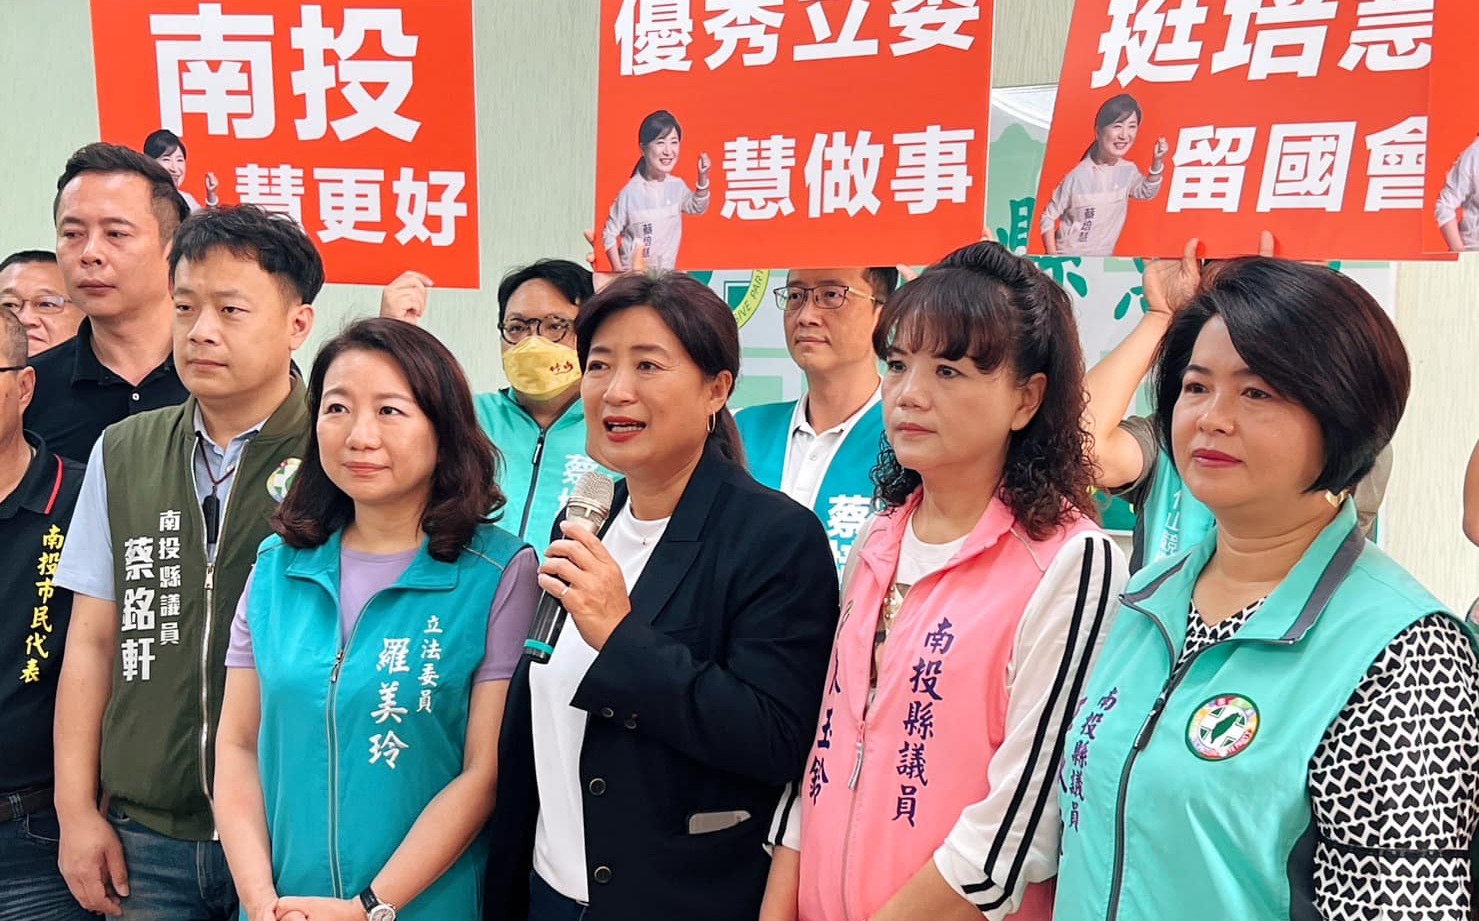 史上最忙參選人一年選三次  蔡培慧今赴南投黨部登記參選 